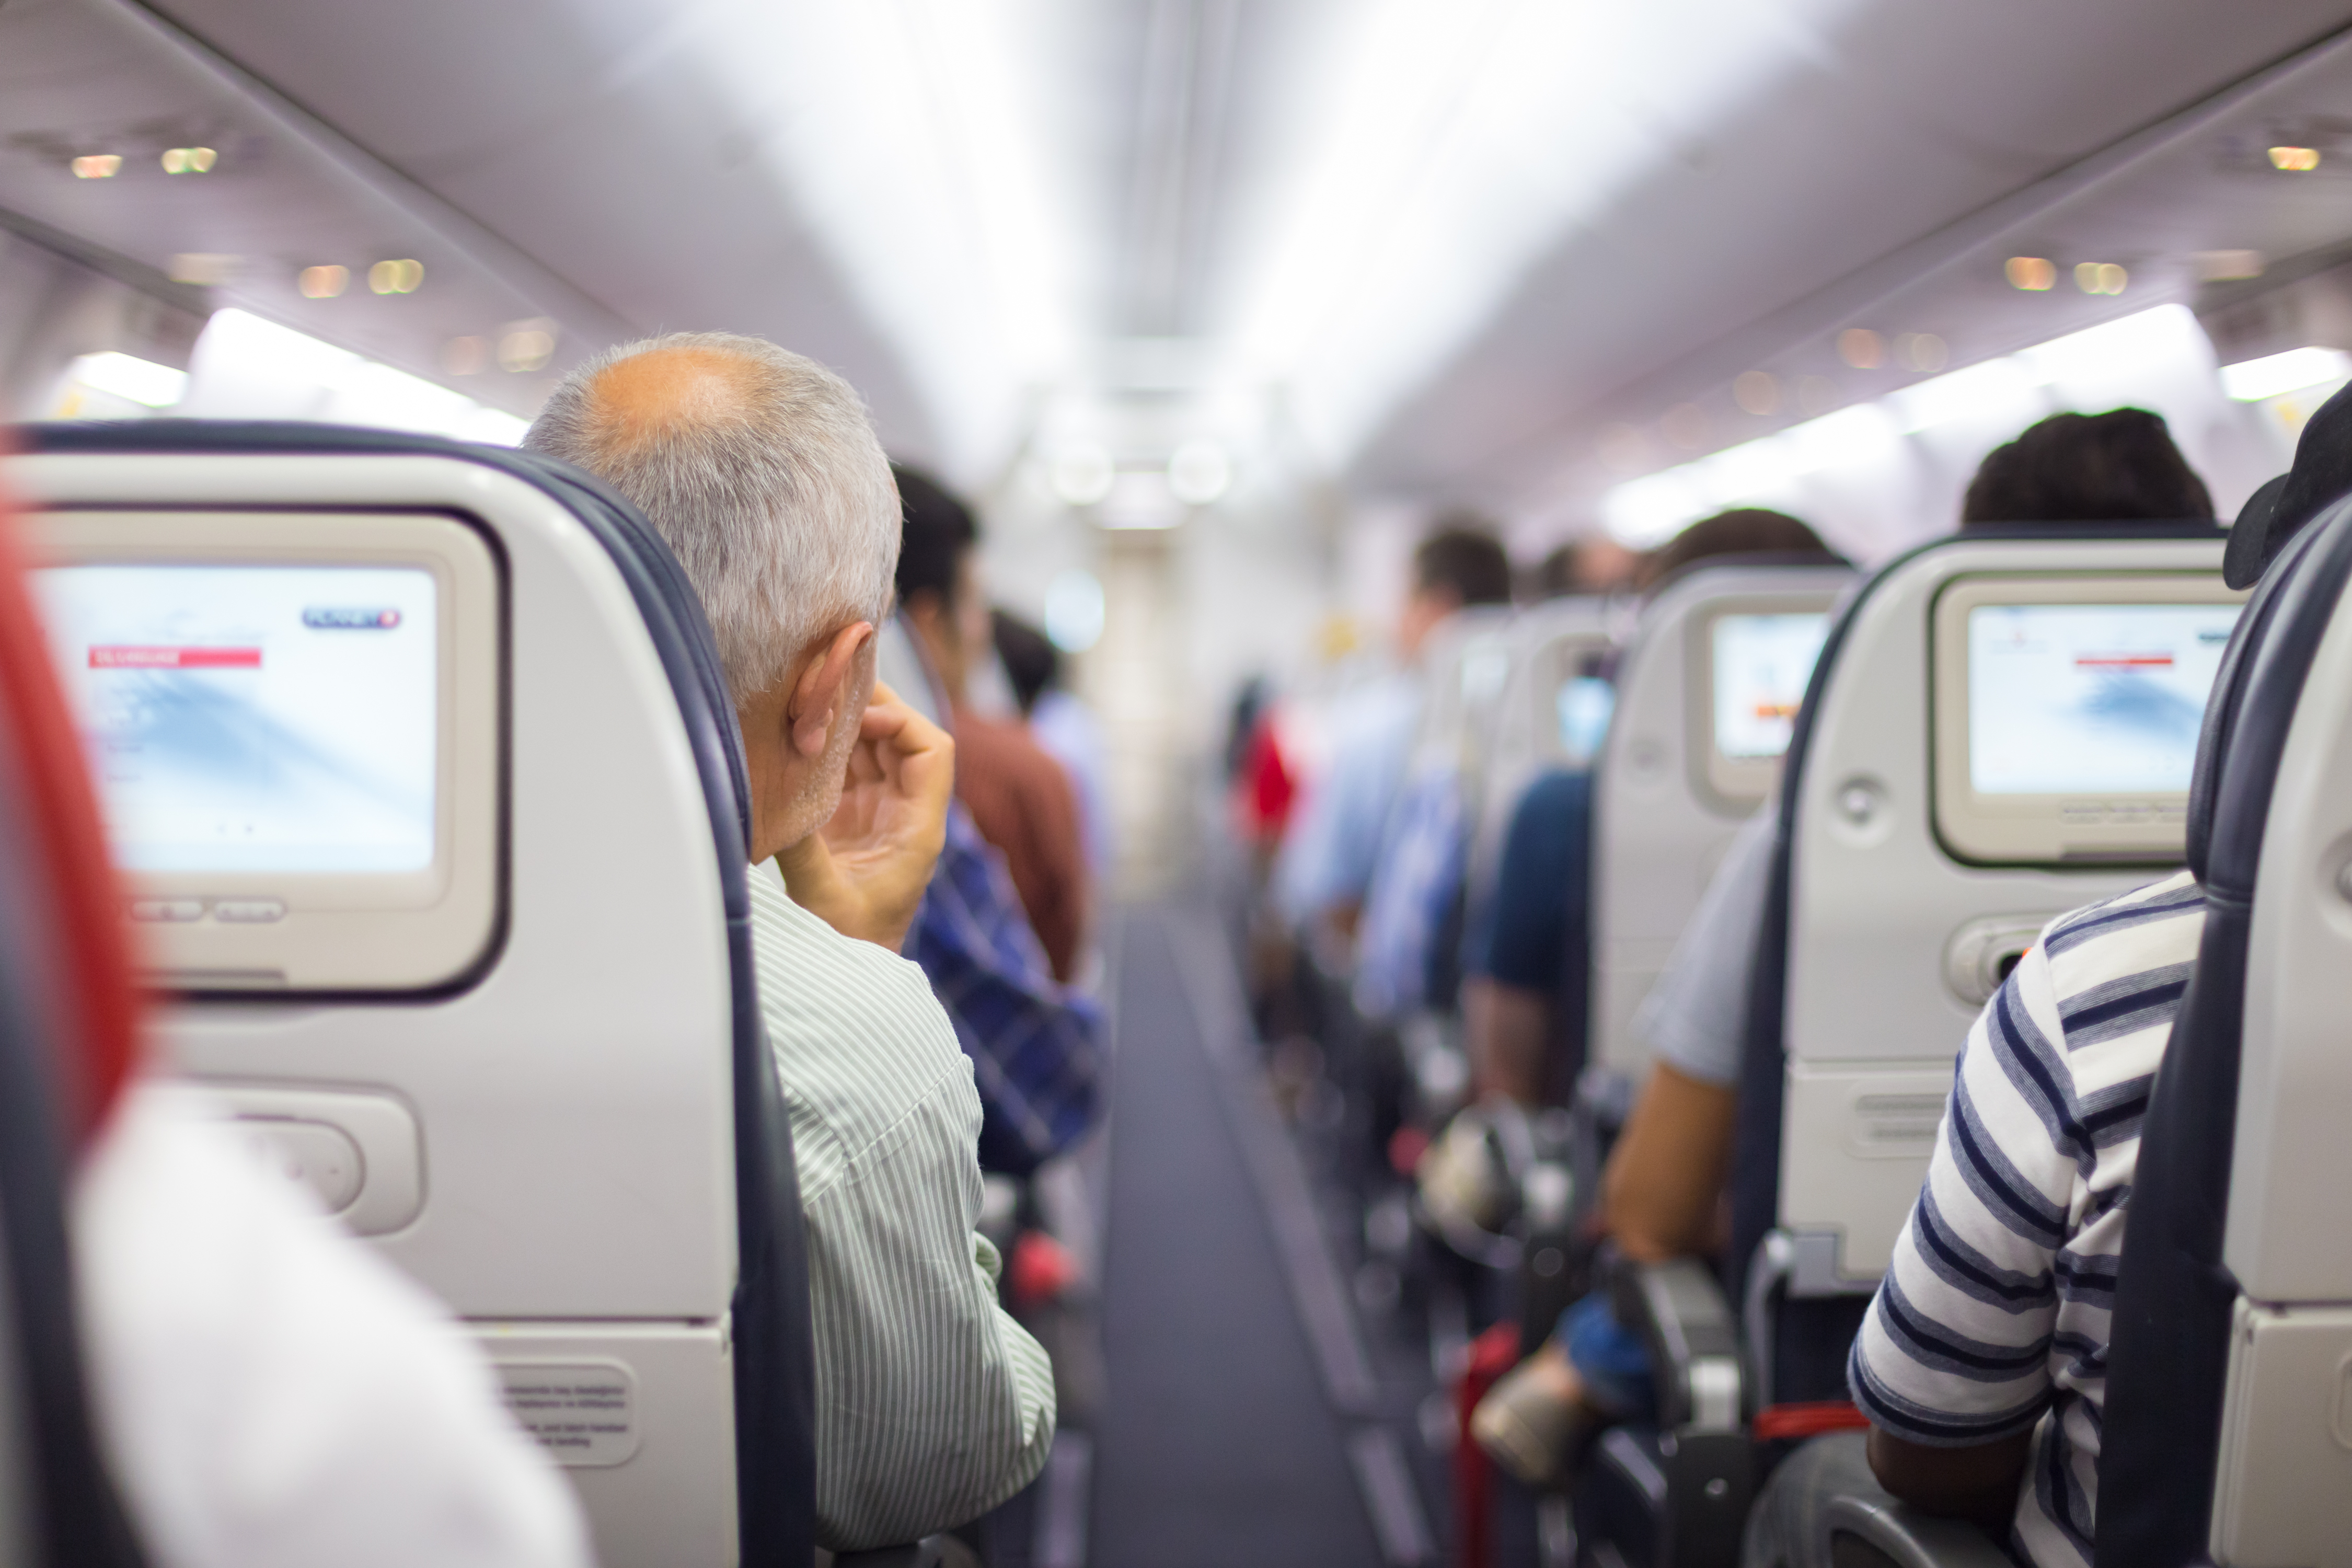 Pasajeros en un avión | Fuente: Shutterstock